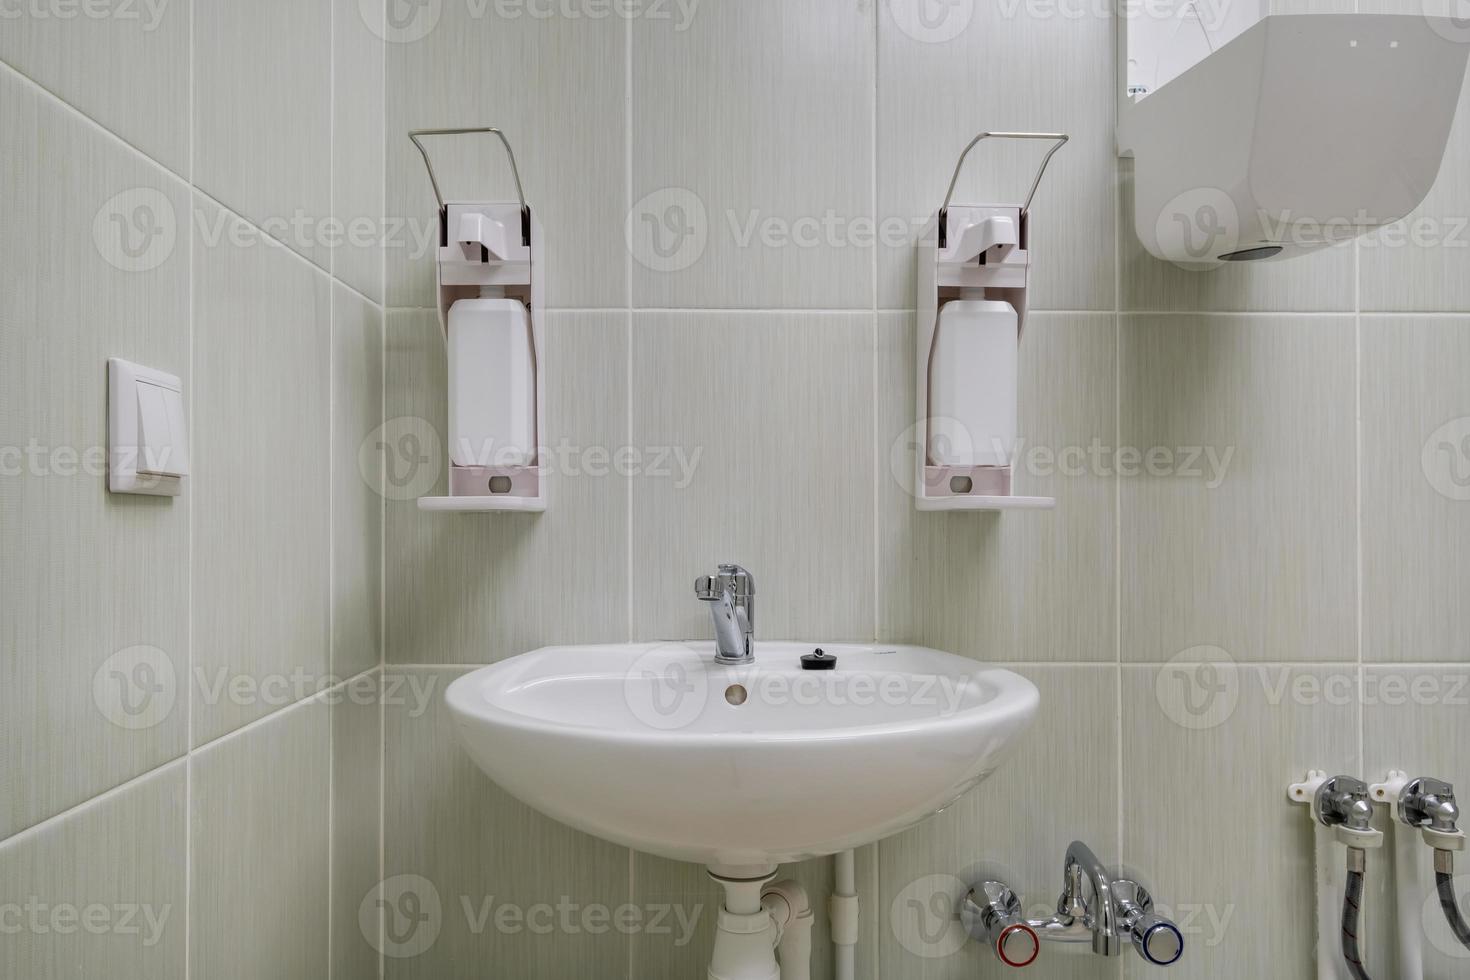 sabonete de cotovelo e dispensador anti-séptico ou desinfetante montado na parede para desinfecção das mãos e pia de torneira de água com torneira banheiro ou clínica foto